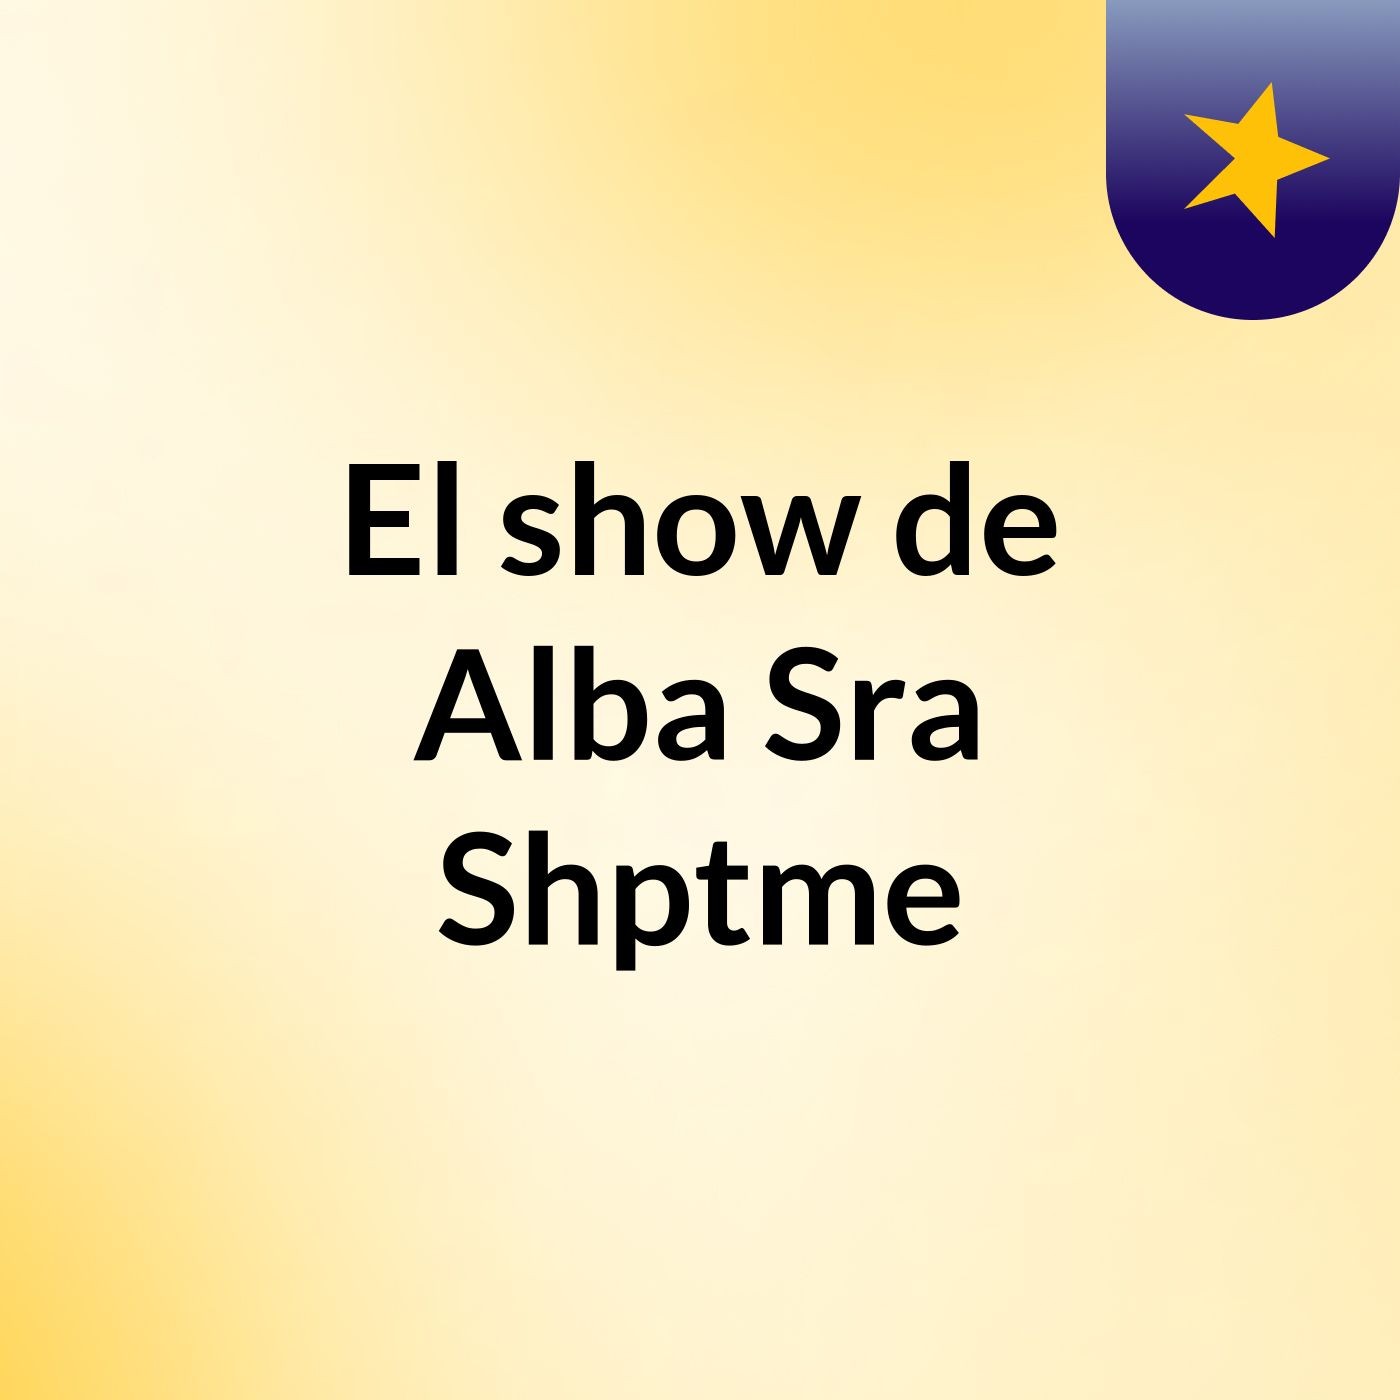 El show de Alba Sra Shptme